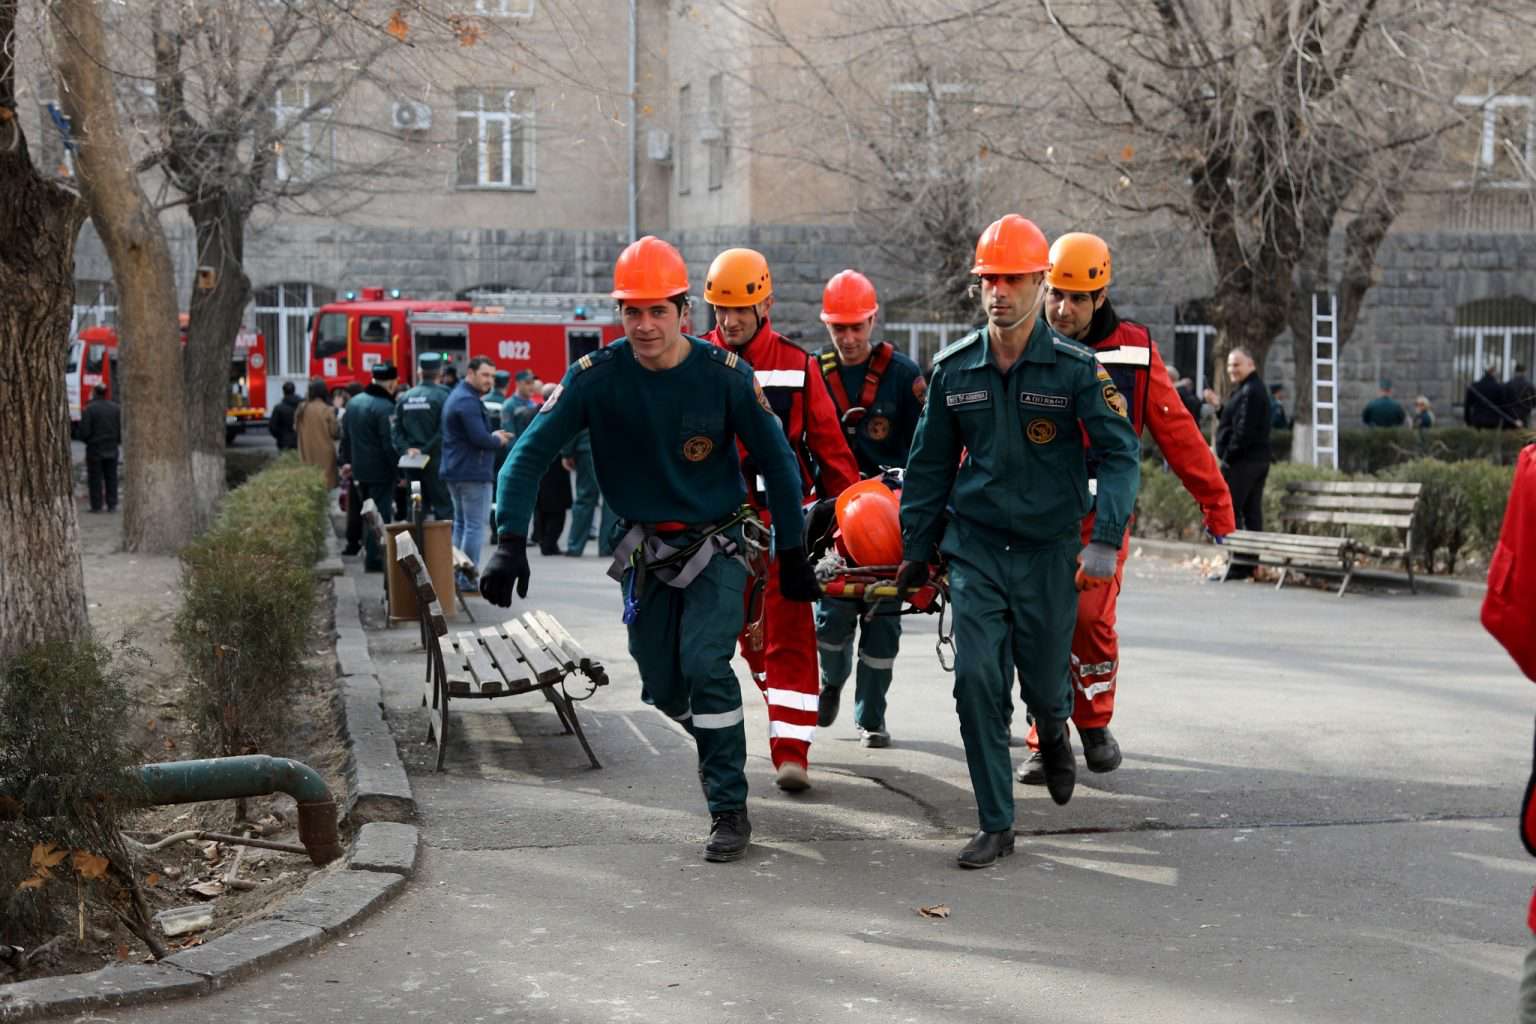 Երևանում մեկնարկում են քաղաքացիական պաշտպանության միջազգային օրվան նվիրված միջոցառումները